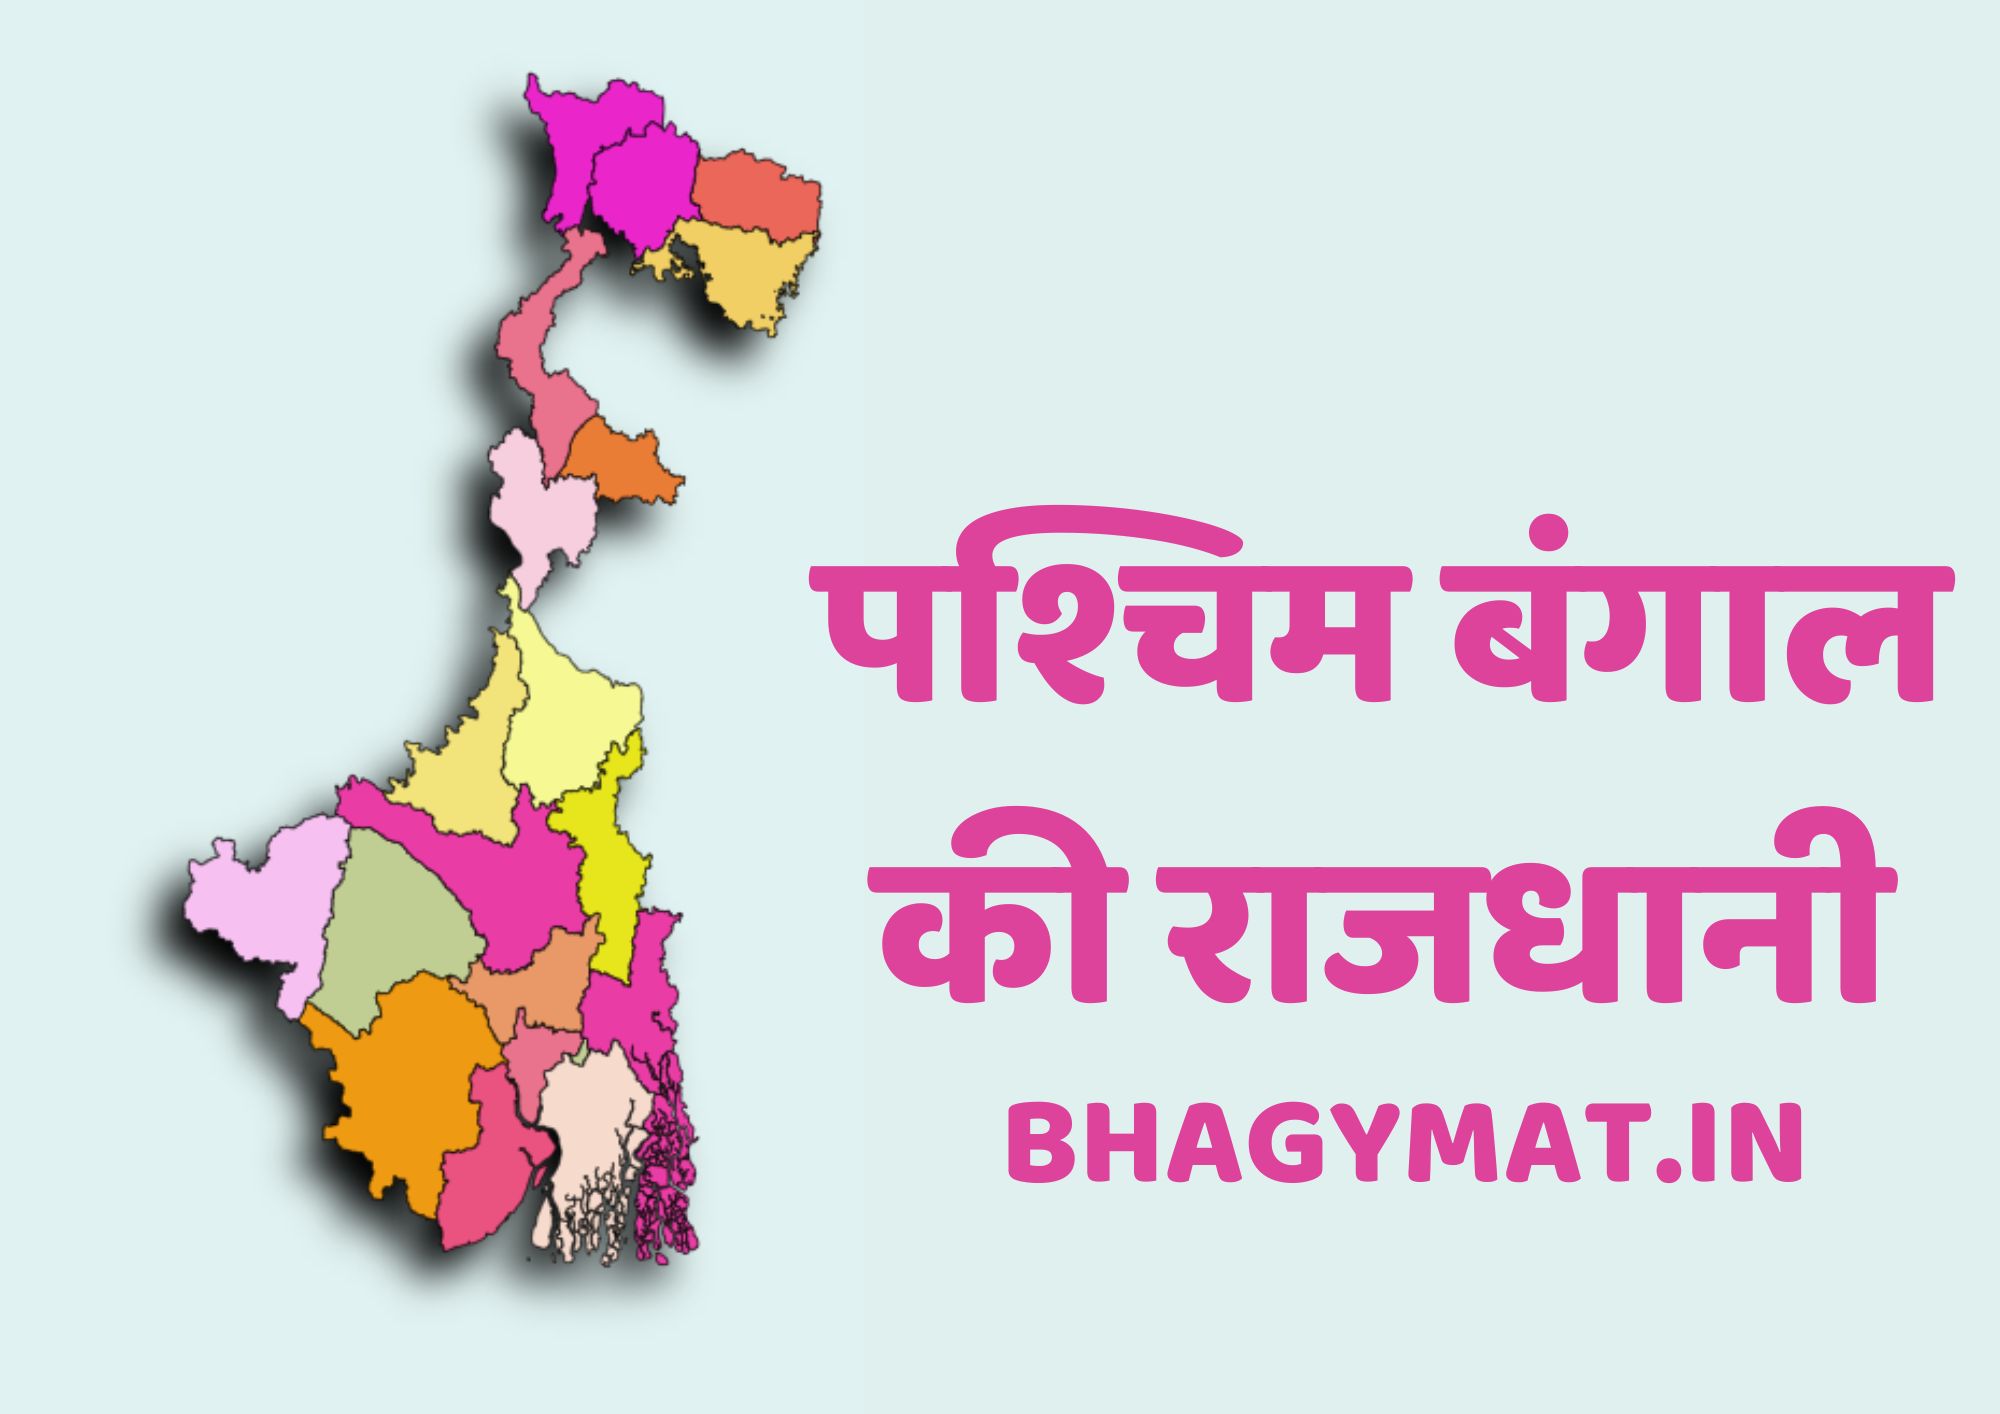 पश्चिम बंगाल की राजधानी कहां है (पश्चिम बंगाल की राजधानी क्या है) – Paschim Bangal Ki Rajdhani Kahan Hai | Paschim Bangal Ki Rajdhani Kya Hai